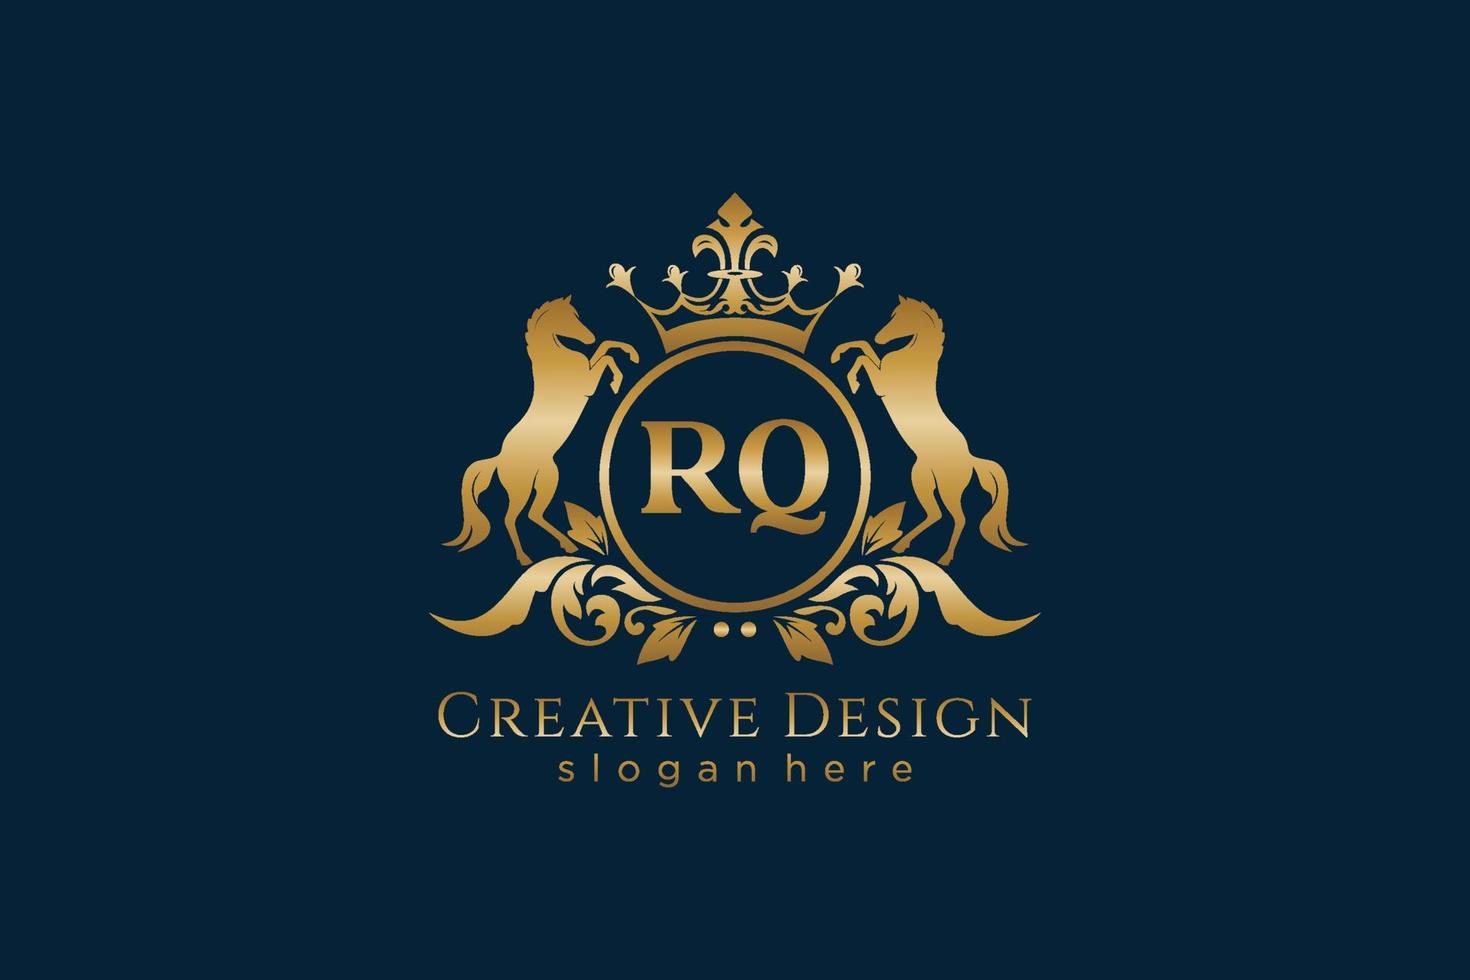 crista dourada retrô inicial rq com círculo e dois cavalos, modelo de crachá com pergaminhos e coroa real - perfeito para projetos de marca luxuosos vetor